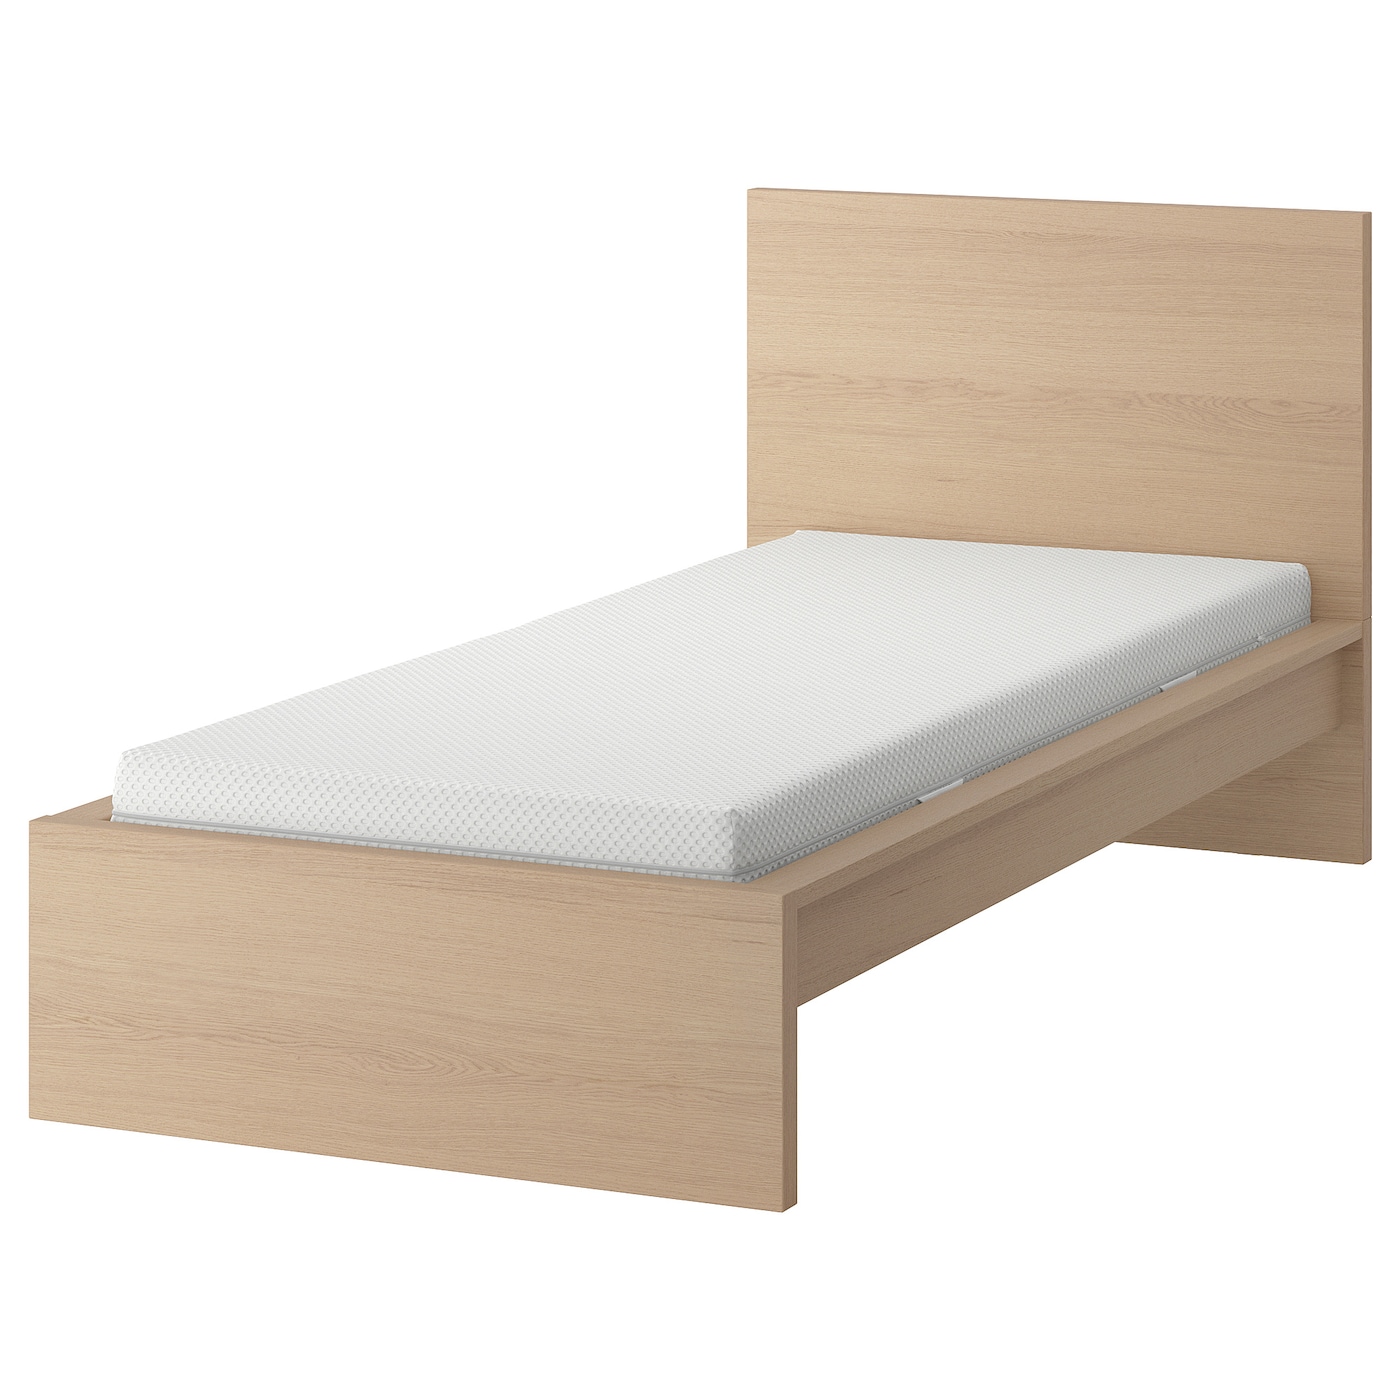 Кровать - IKEA MALM, 200х90 см, матрас жесткий, под беленый дуб, МАЛЬМ ИКЕА